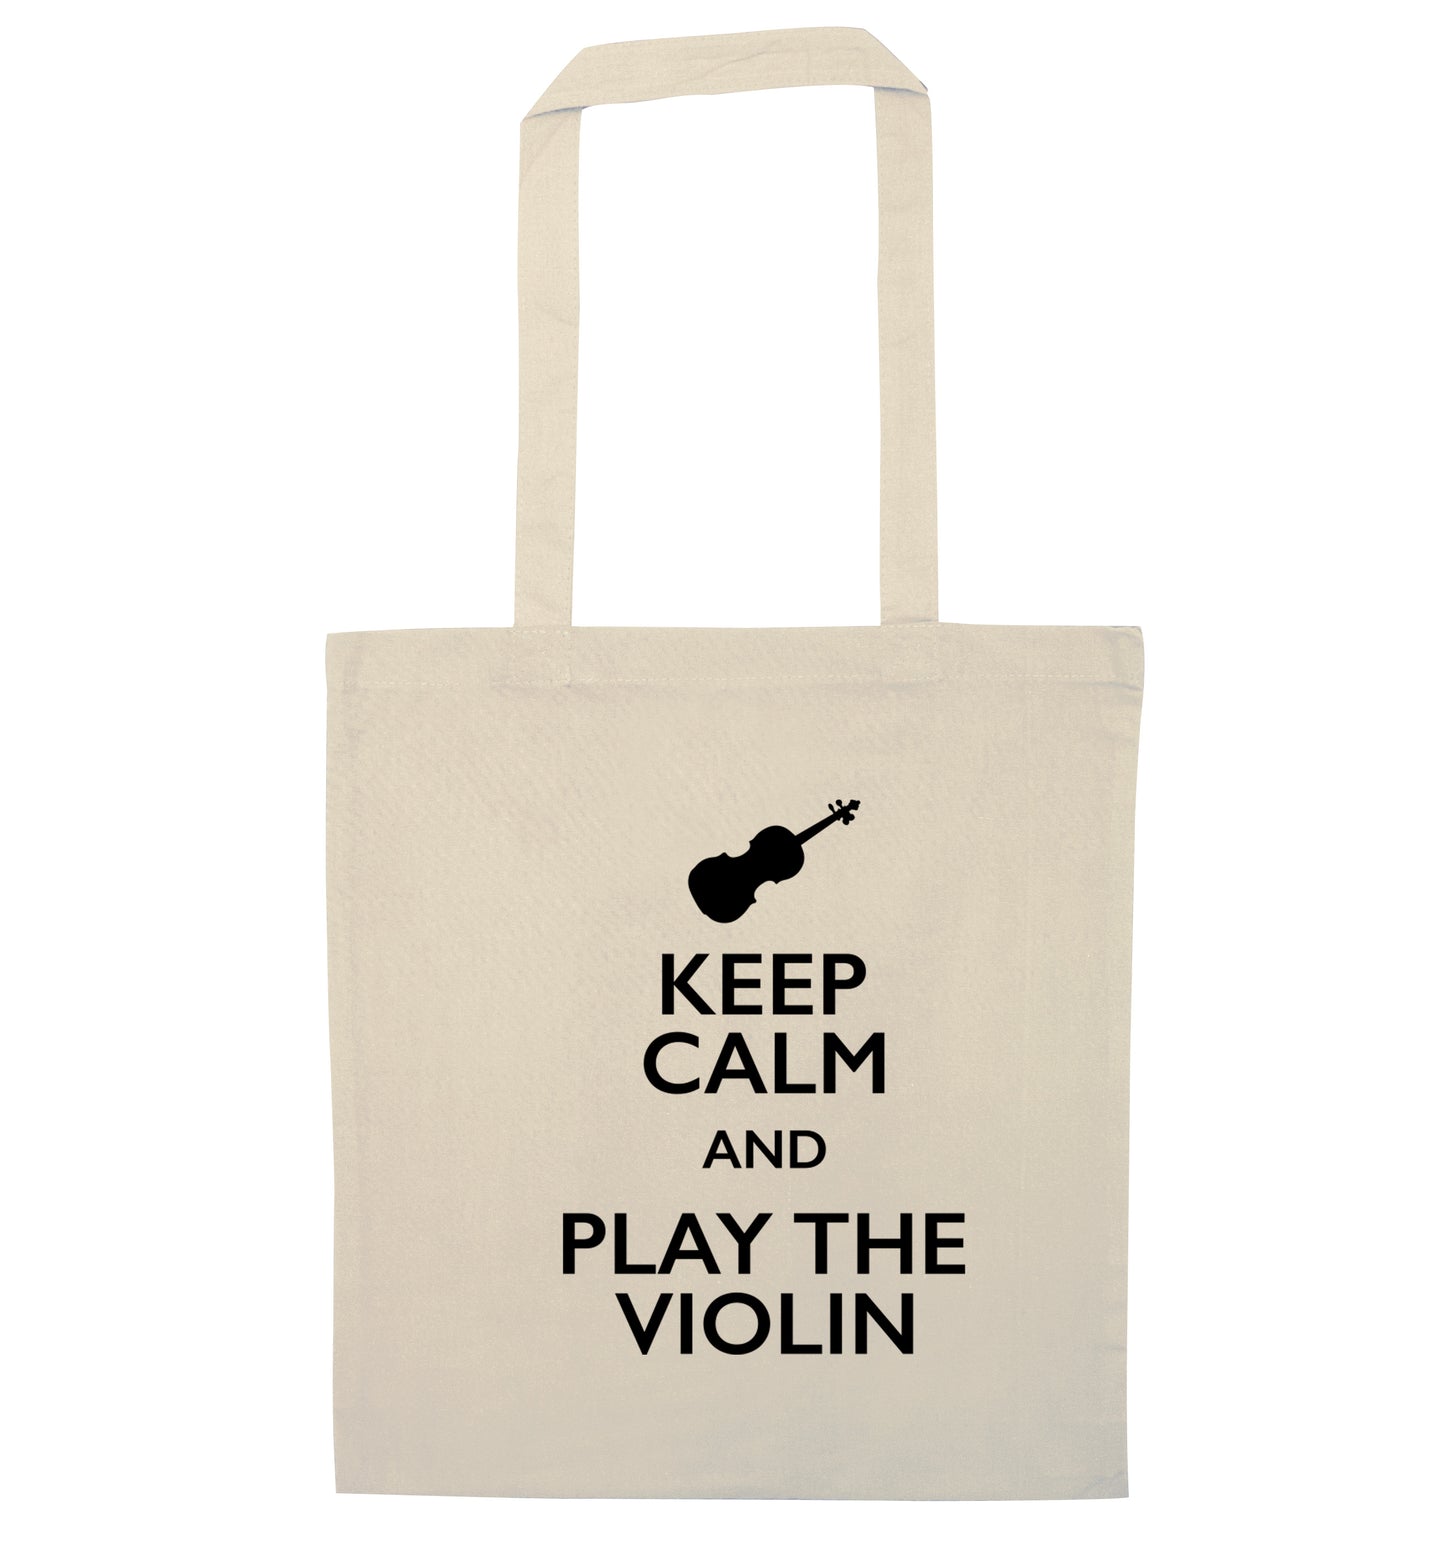 Keep calm and play the violin natural tote bag